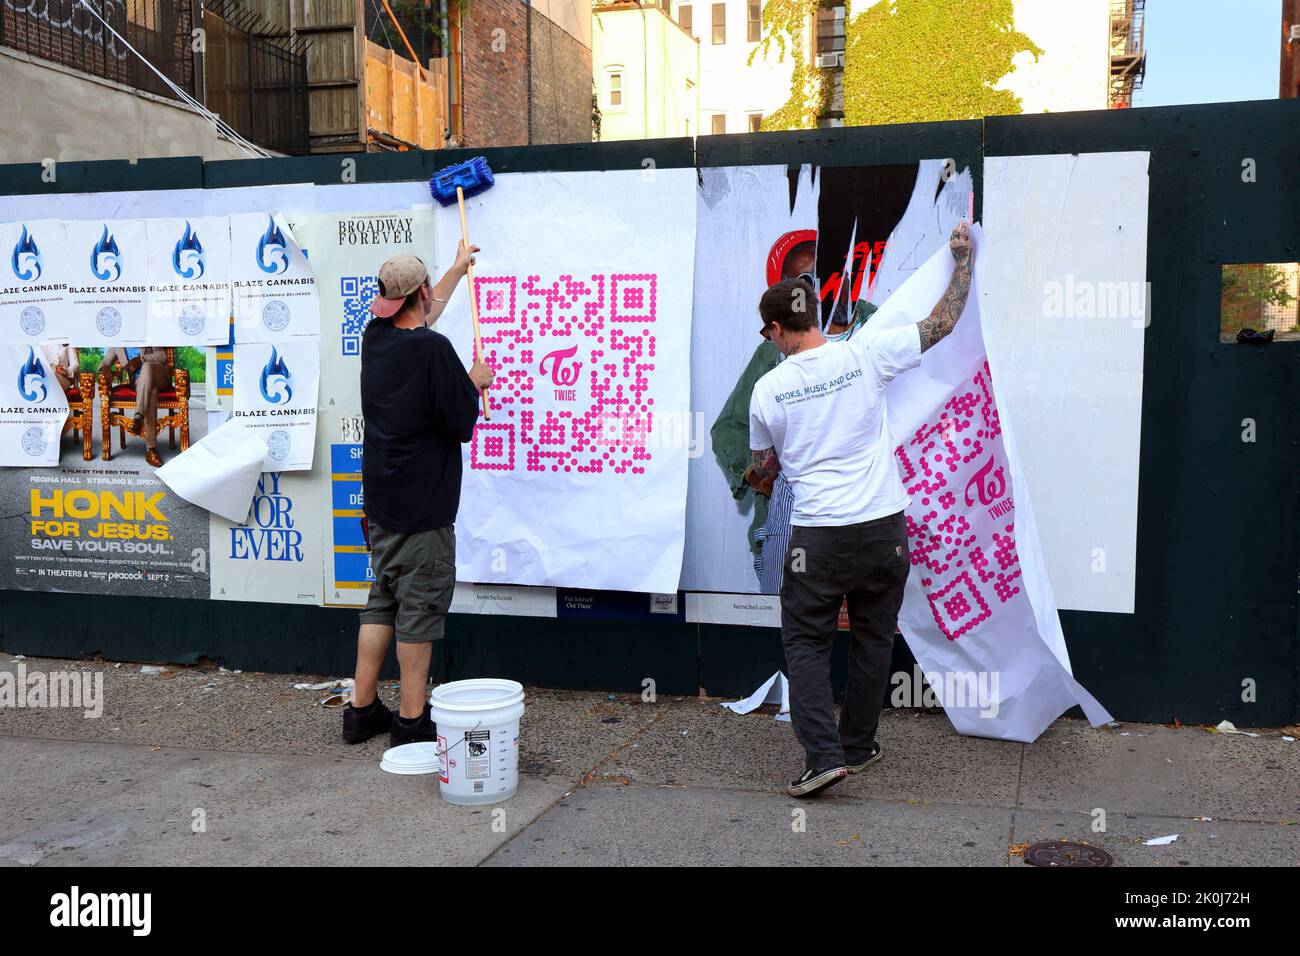 Des gens qui collent des affiches publicitaires sur un mur, ou des annonces publicitaires sauvages, dans le cadre d'une campagne de marketing urbain au niveau de la rue, de la guérilla. Banque D'Images